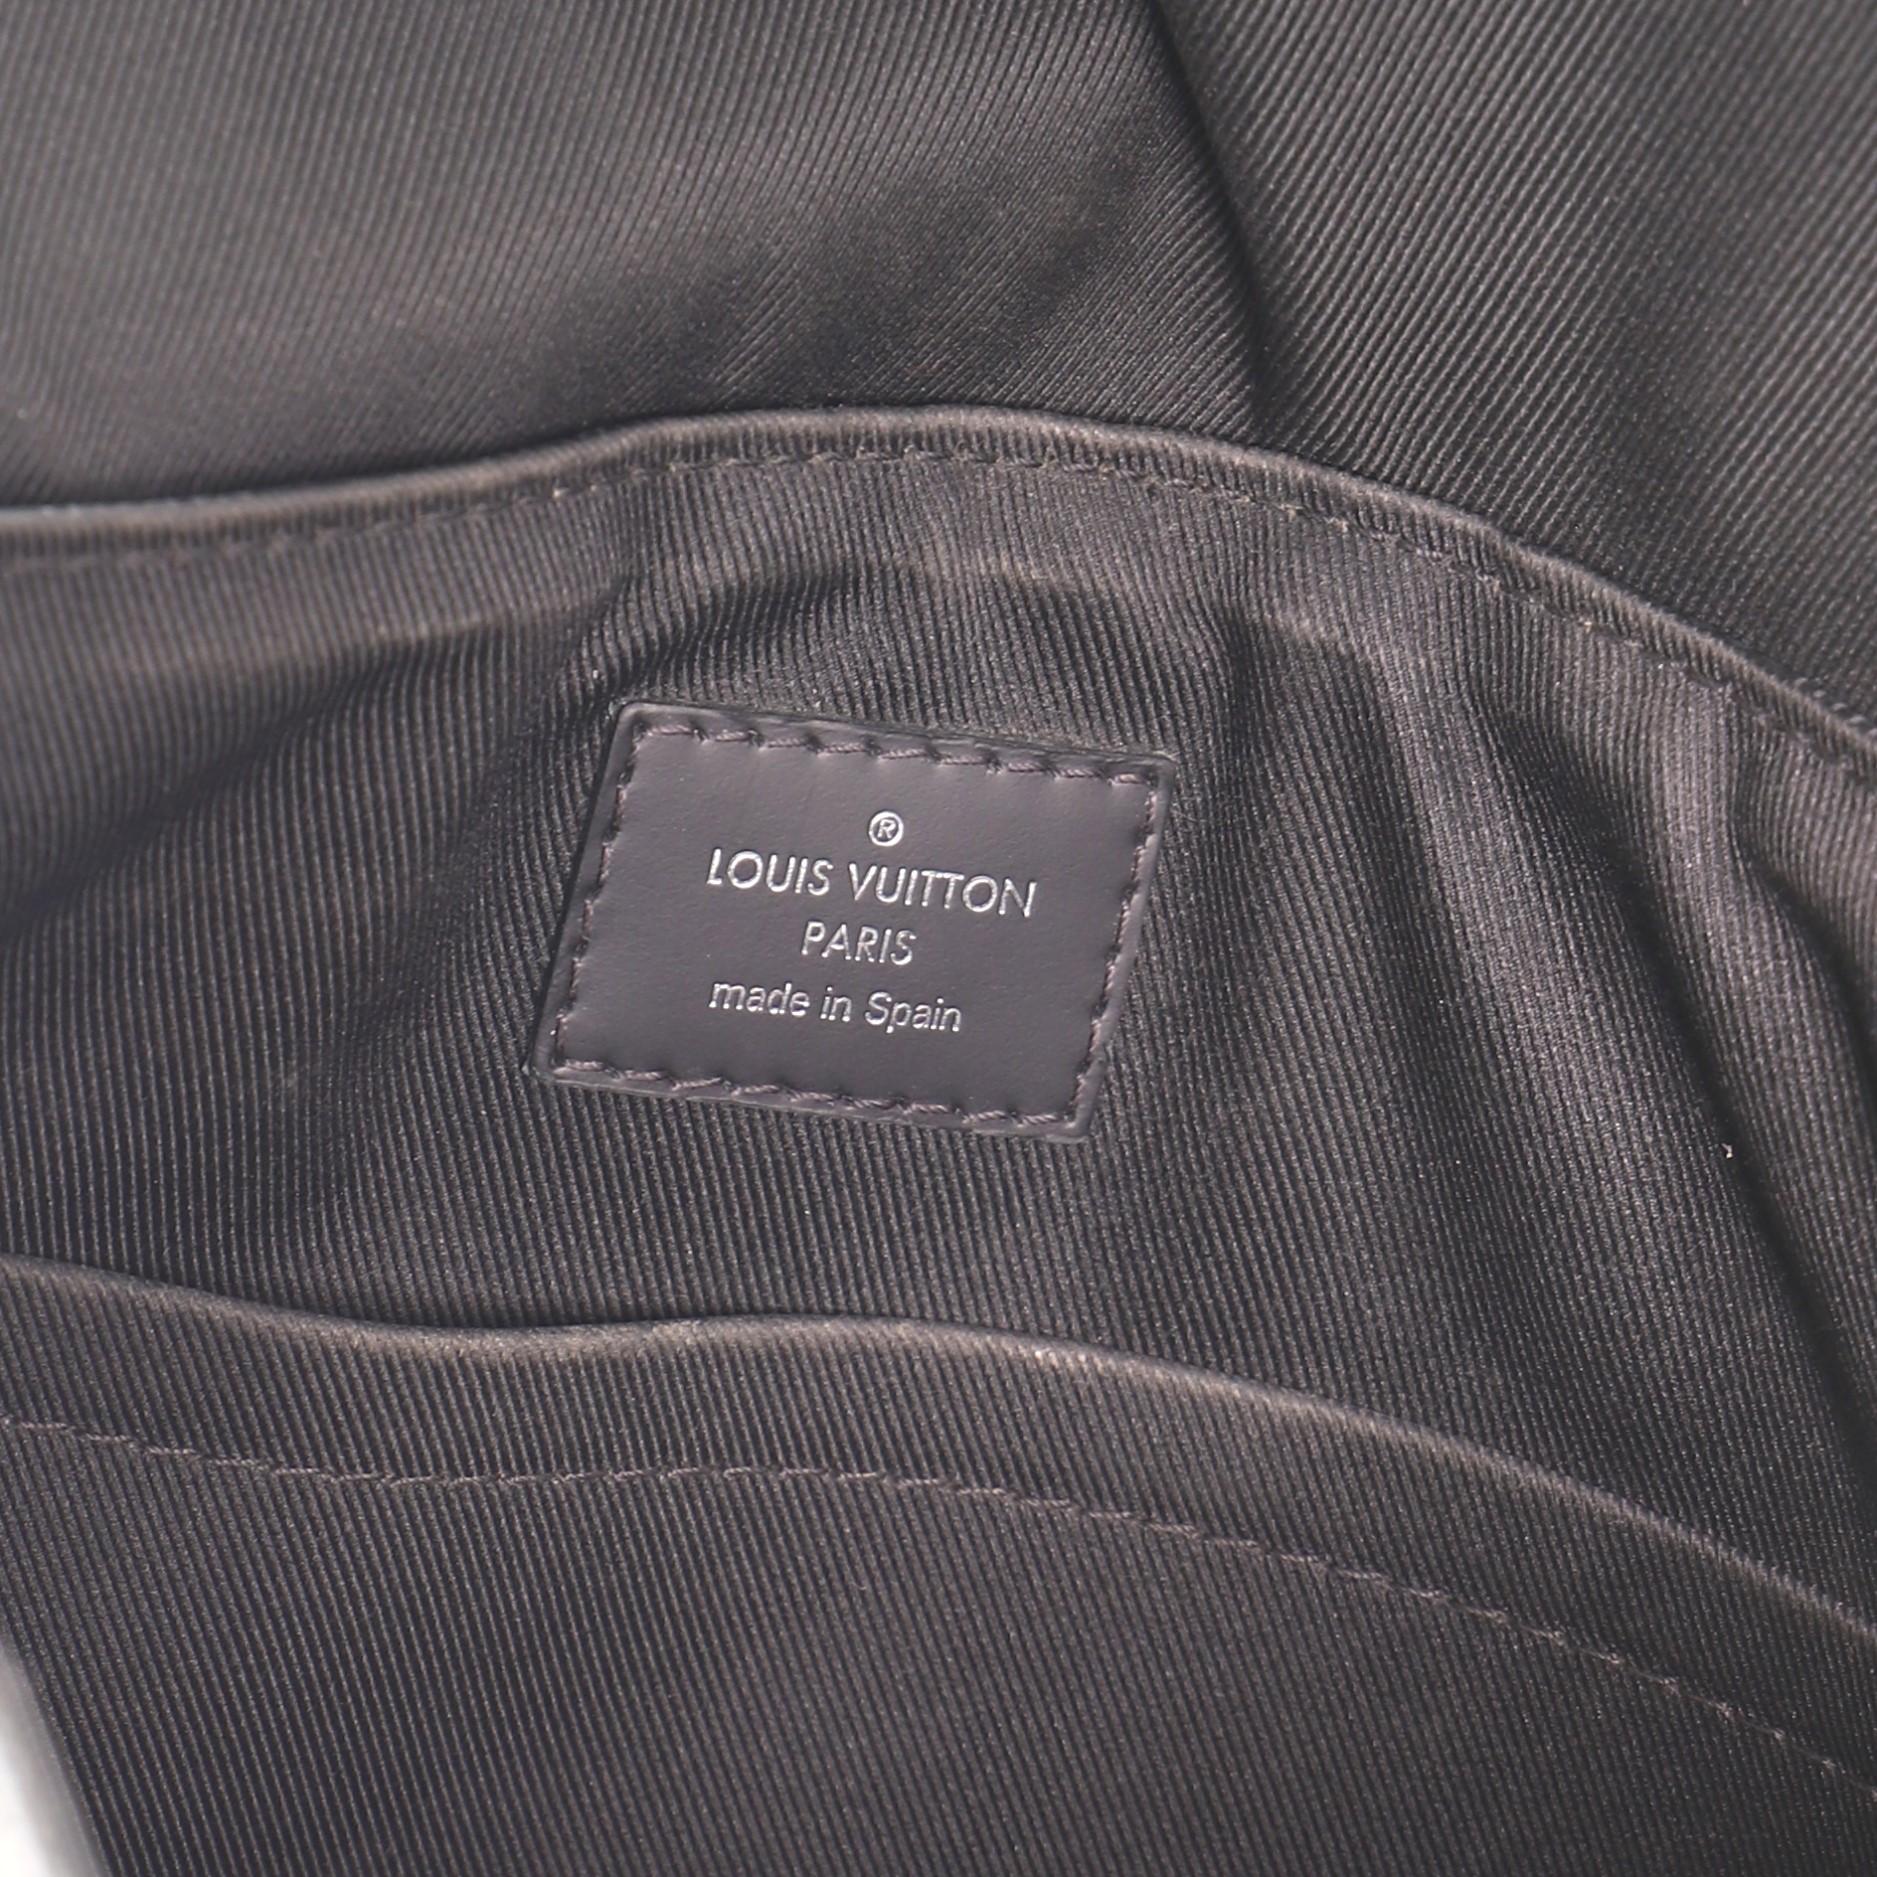 Louis Vuitton District NM Messenger Bag Damier Graphite PM 1